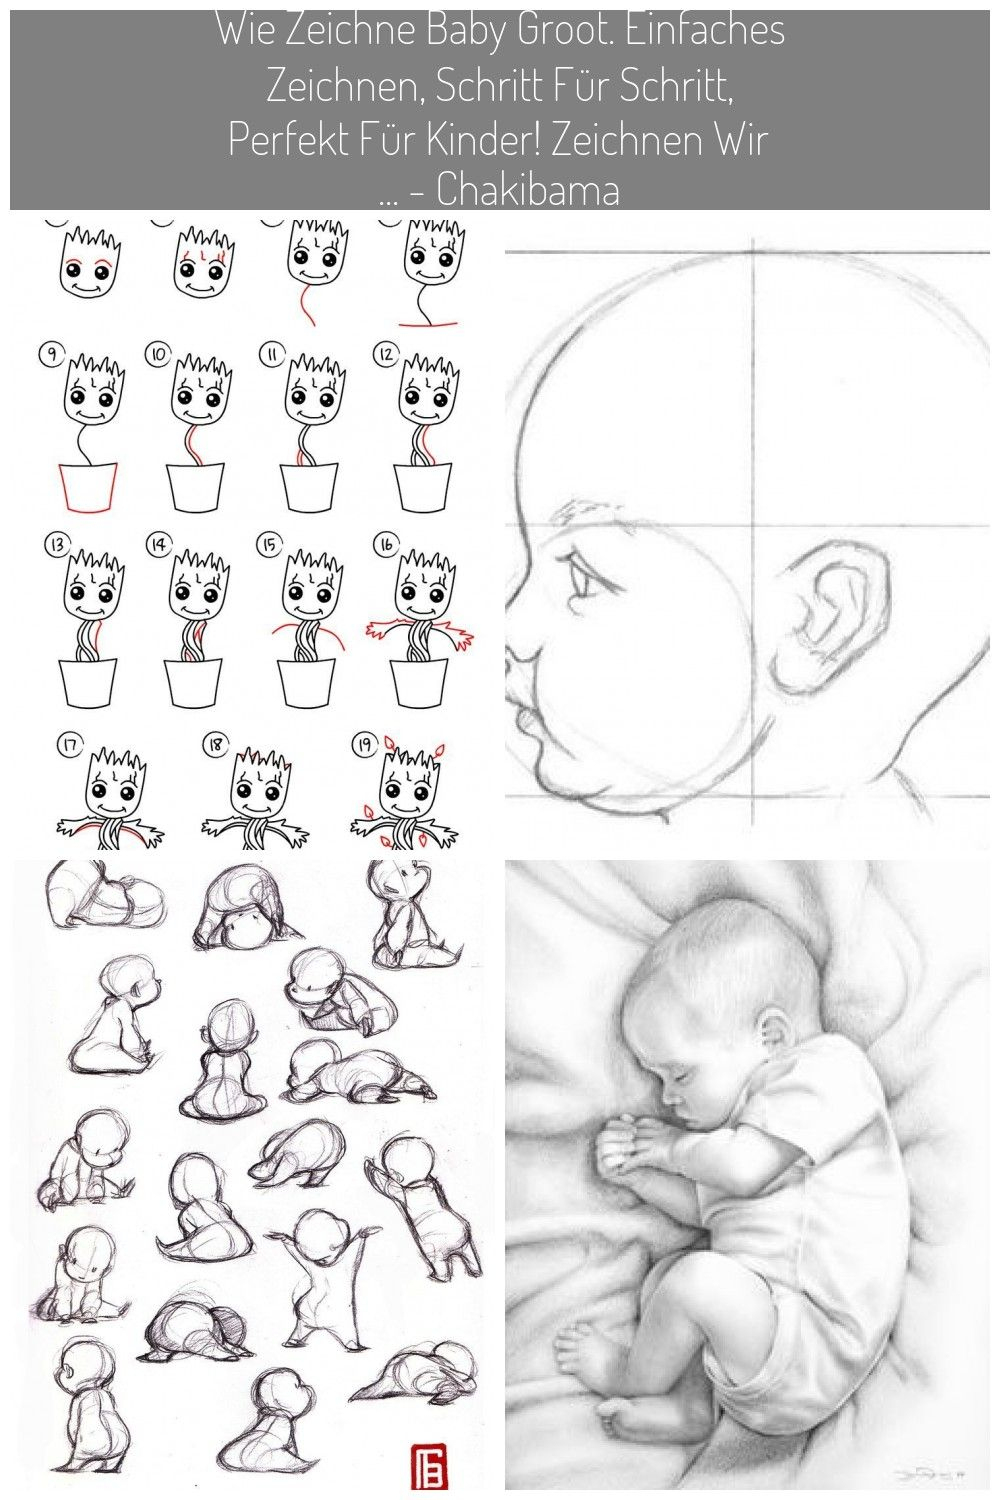 Wie Zeichne Baby Groot Einfaches Zeichnen Schritt Fr Schritt für Perfekt Zeichnen